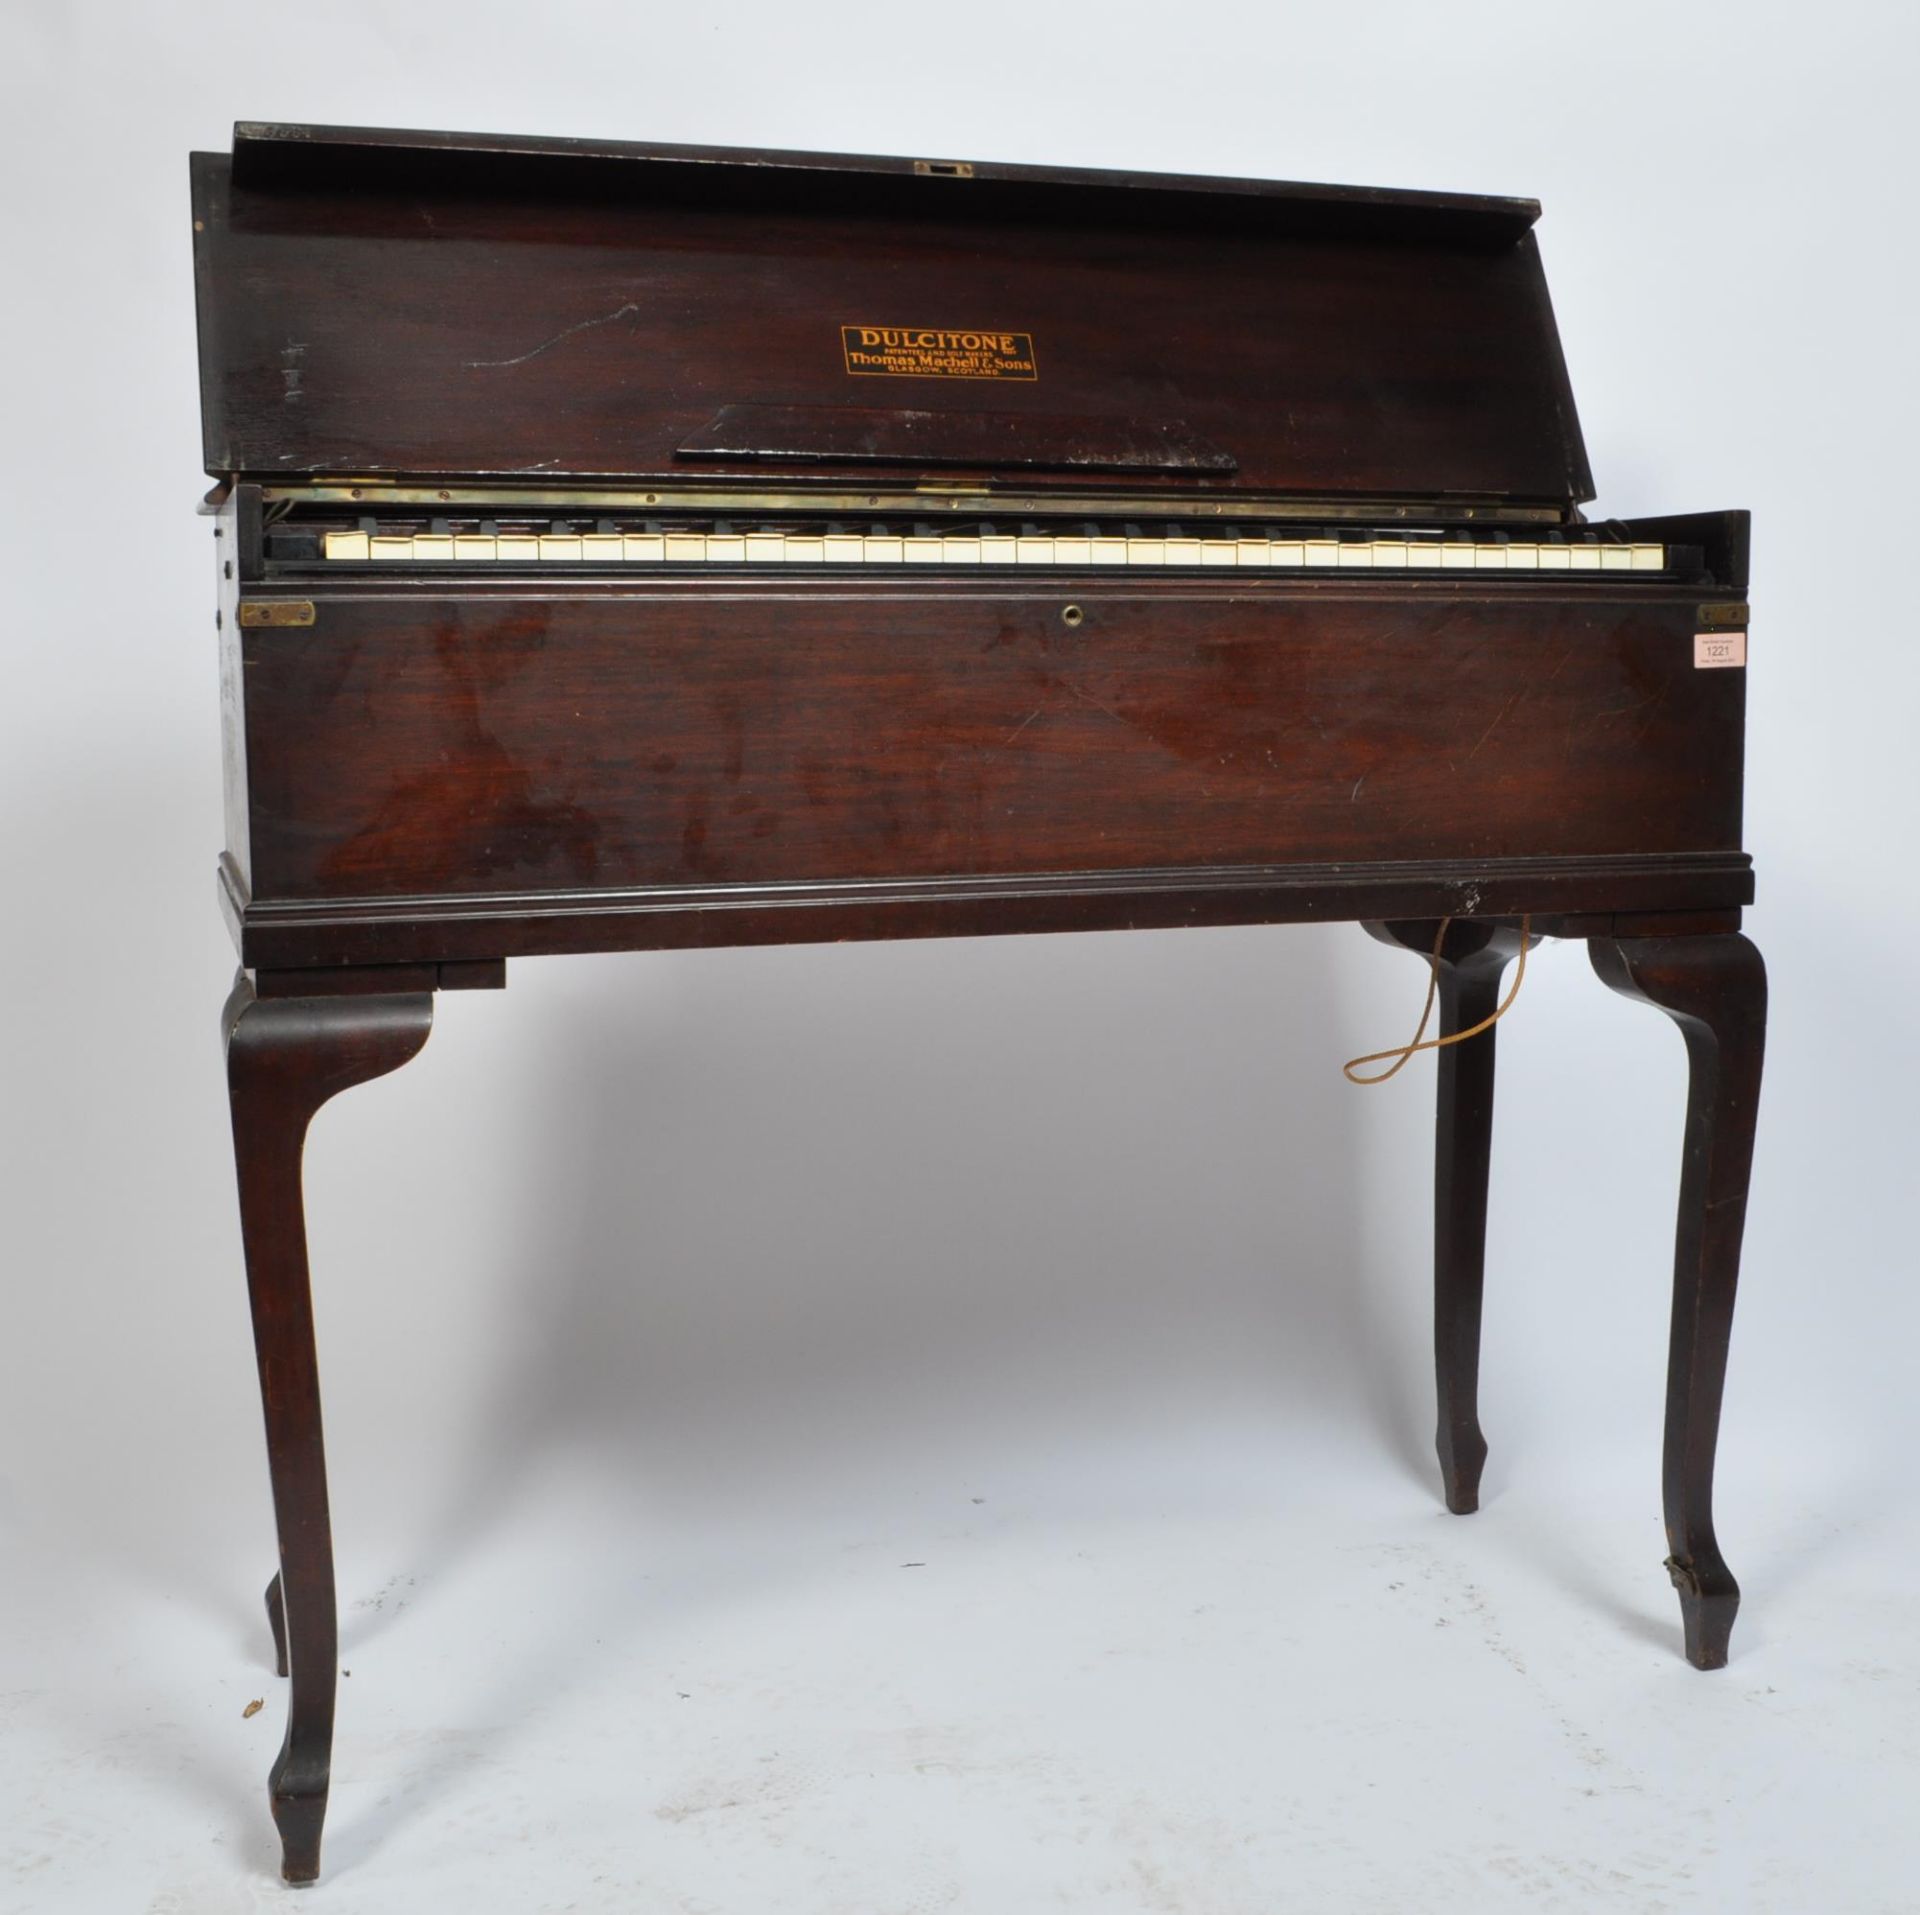 1930’S ART DECO DULCITONE PORTABLE PIANO